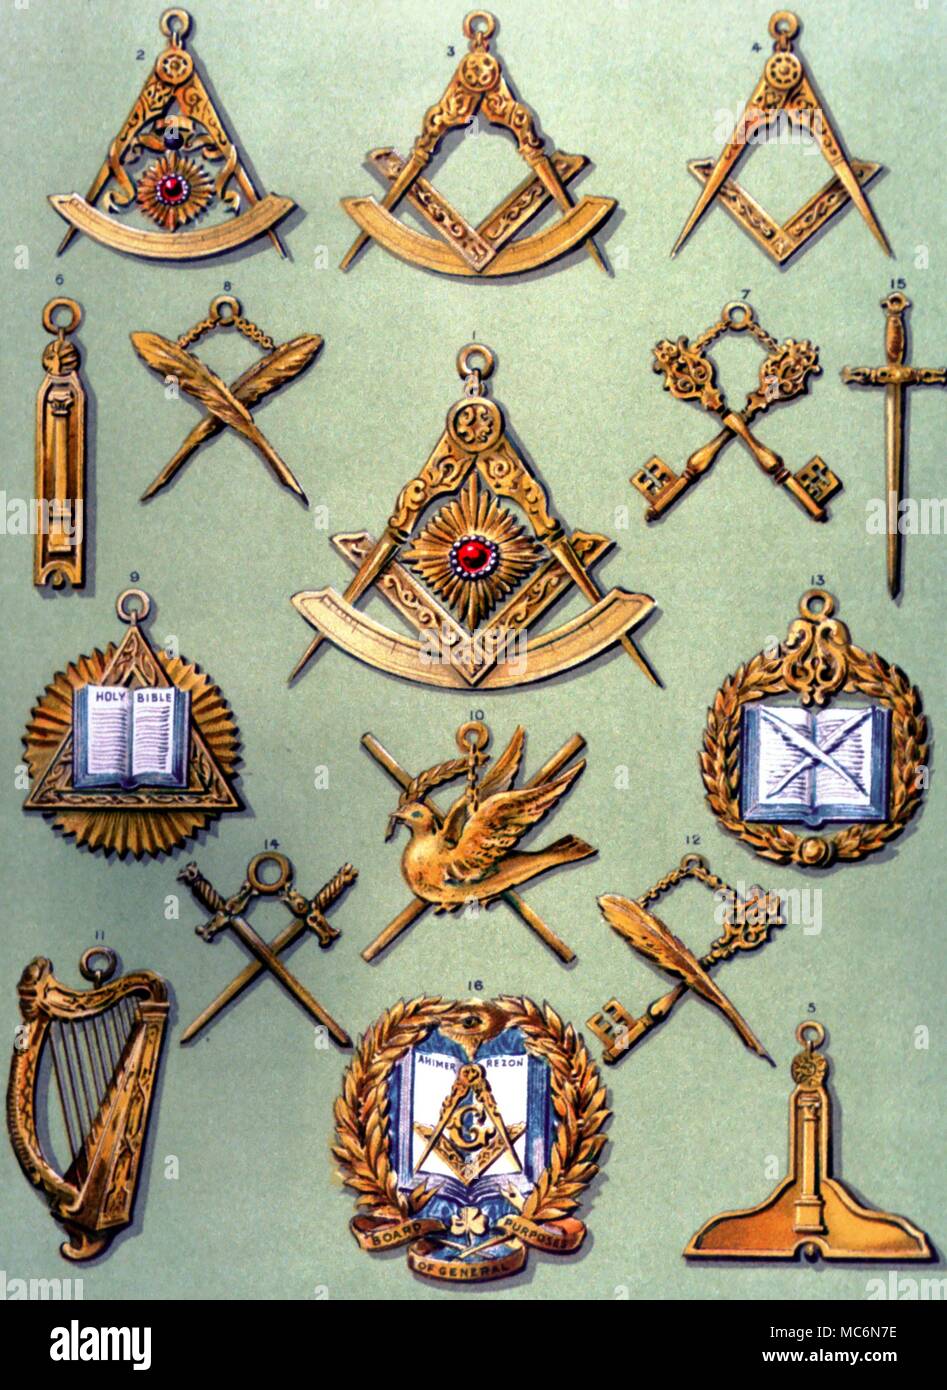 Gioielli massonico Masonic gioielli di varie denominazione lastra litografica da datata 1895 edizione di R F Gould la storia della Massoneria Foto Stock